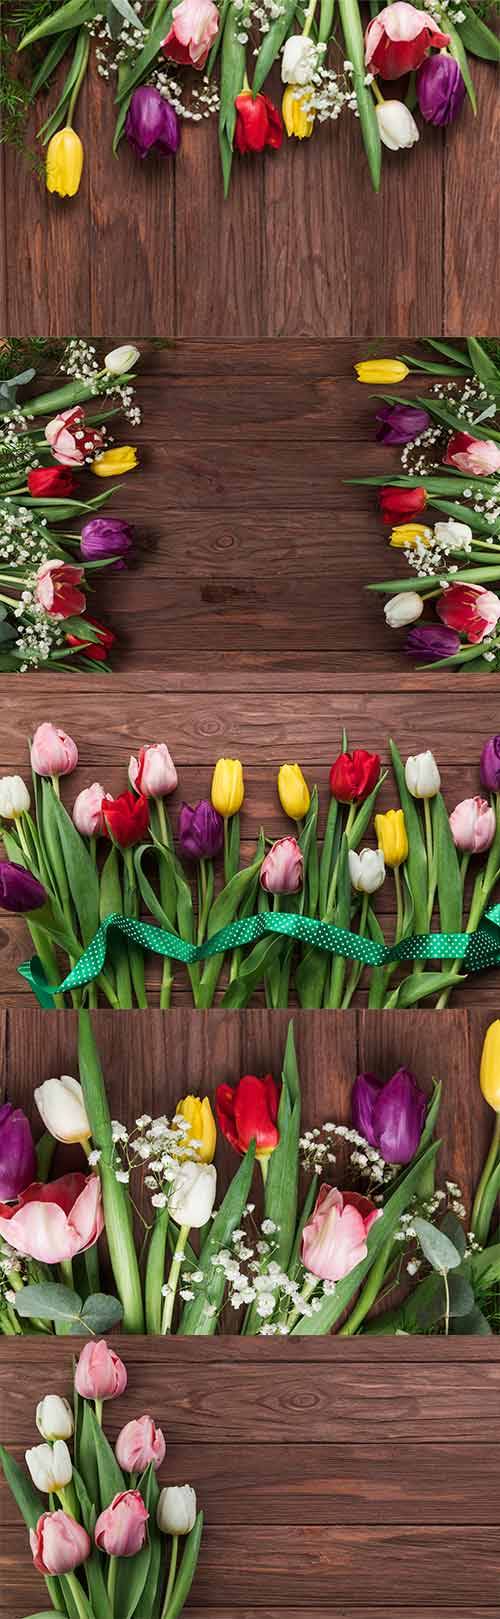  Фоны с красивыми тюльпанами - Растровый клипарт / Backgrounds with beautiful tulips - Raster clipart